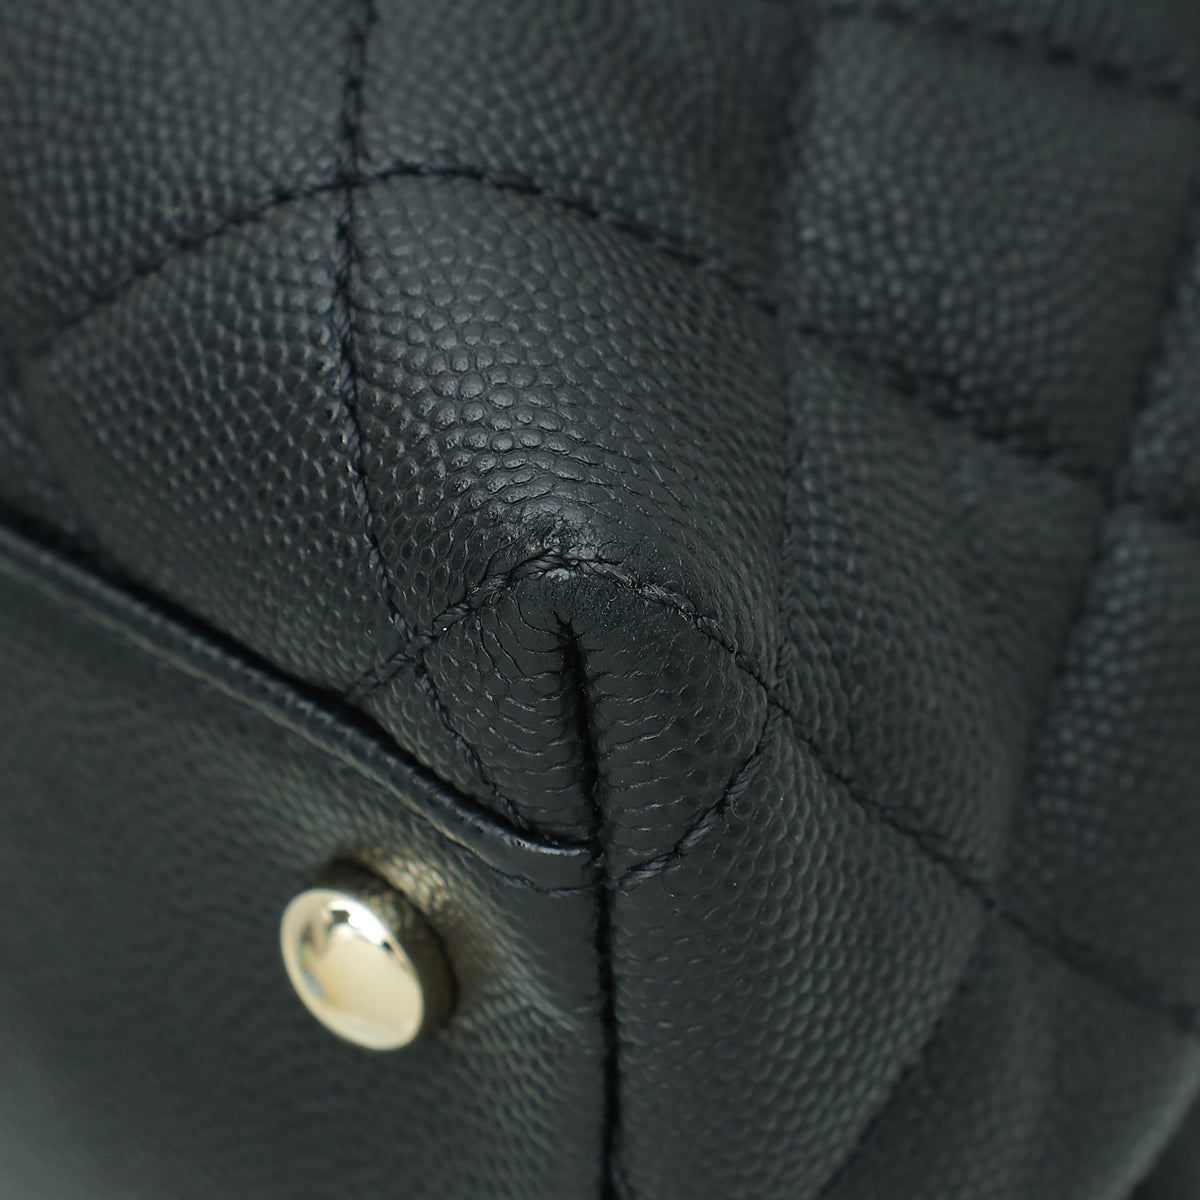 Chanel Black CC Coco Handle Medium Bag